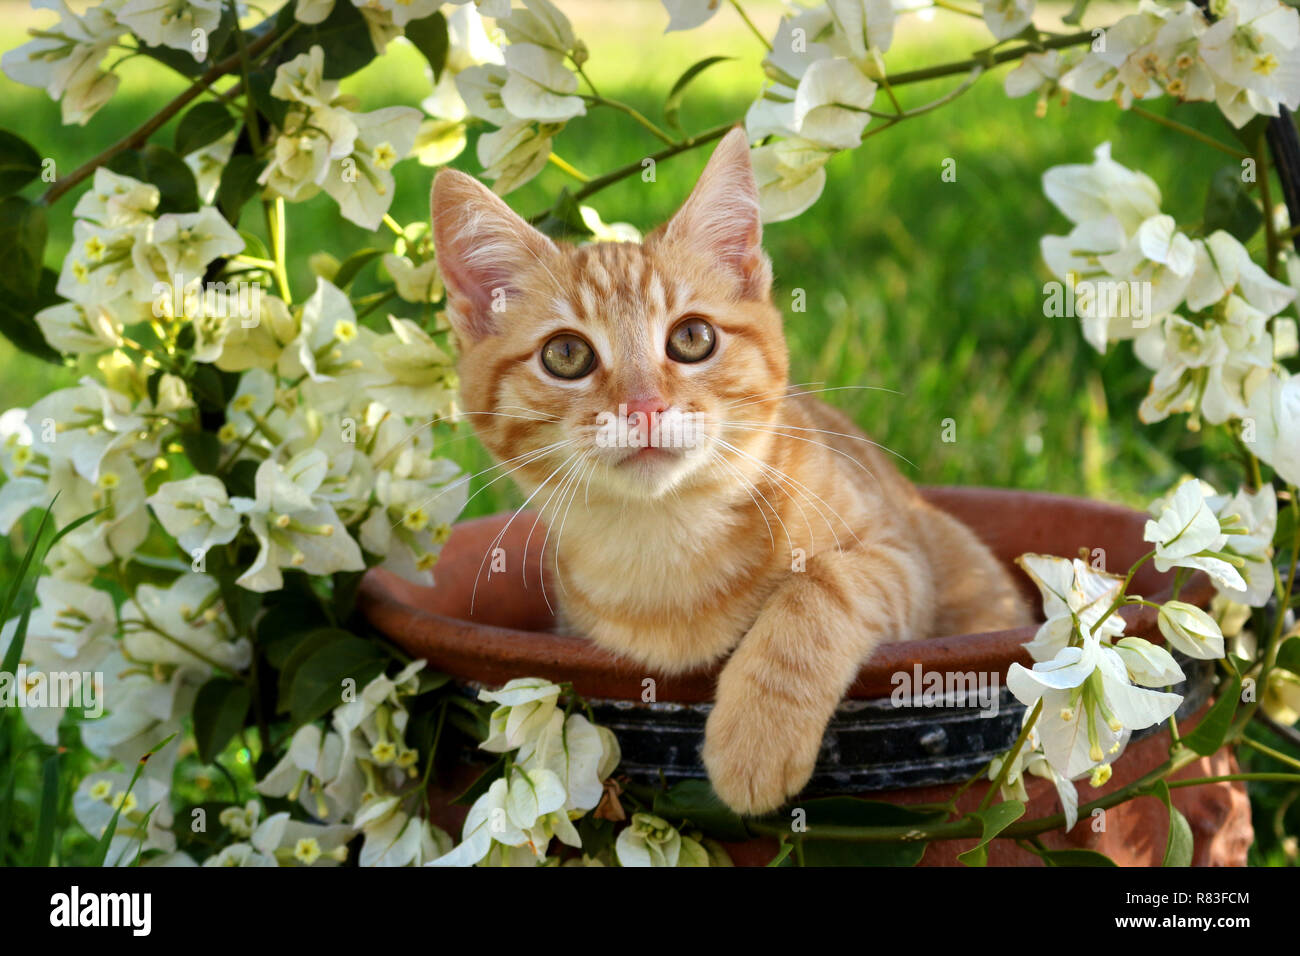 Jeune chat de gingembre, 3 mois, couché dans un pot de fleurs avec des bougainvilliers blanc Banque D'Images